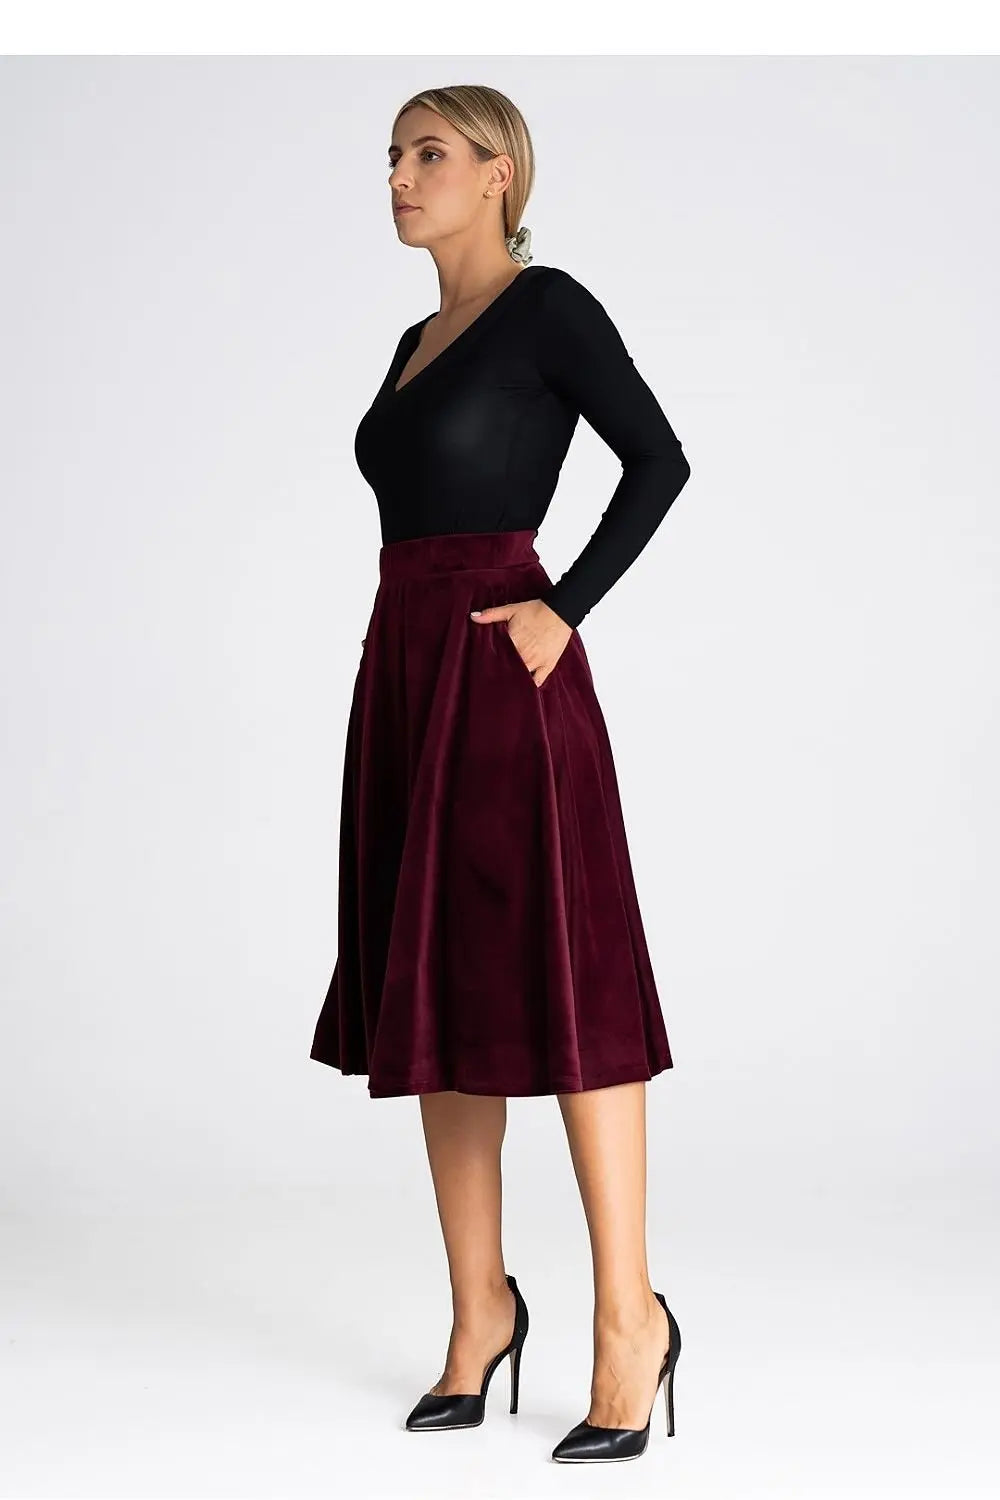 Elegant Trendy Style Midi-Skirt - Venus Trendy Fashion Online